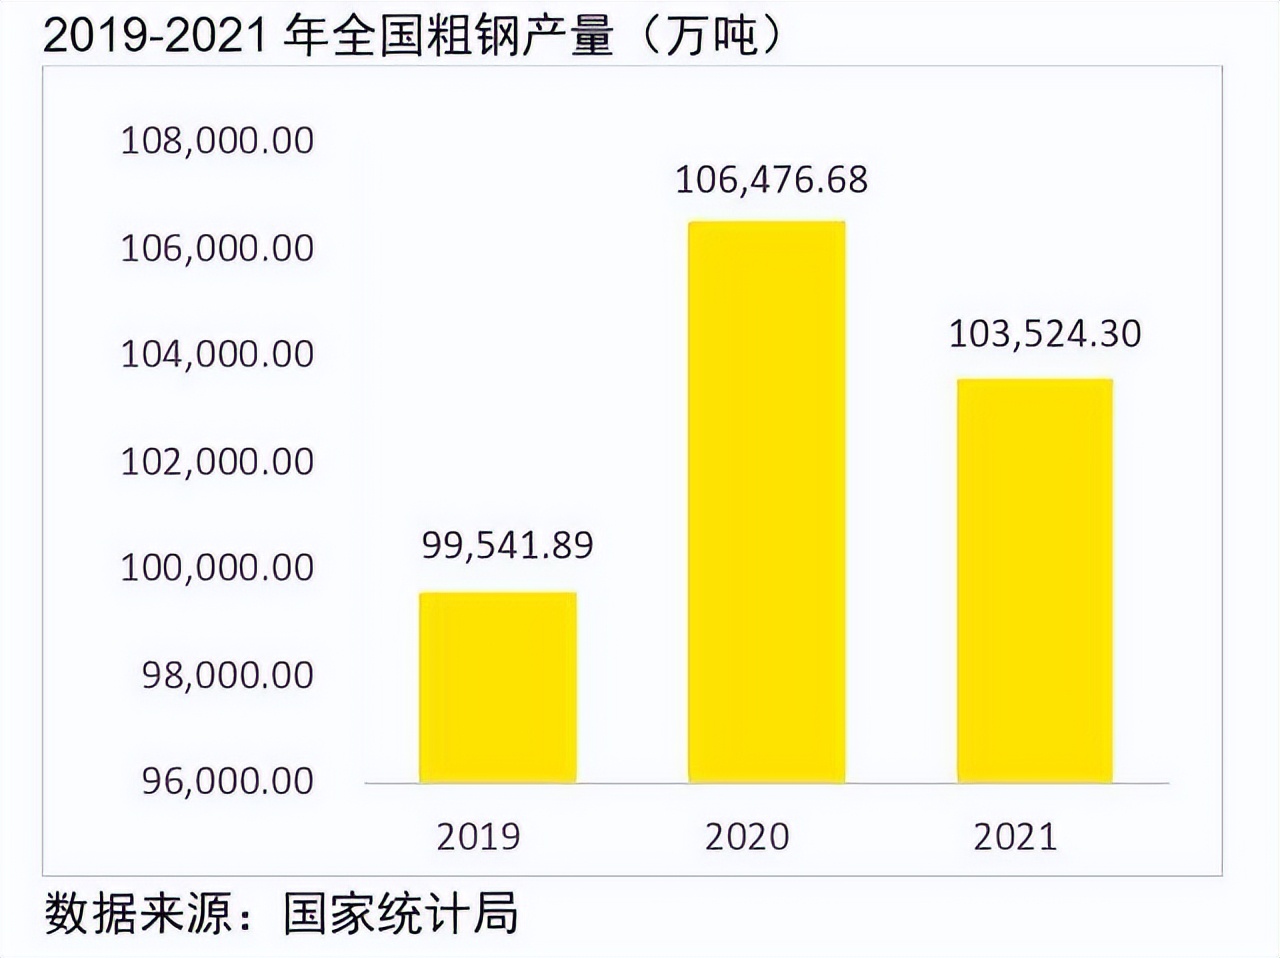 安永发布《中国上市钢铁公司2021年回顾及未来展望》报告